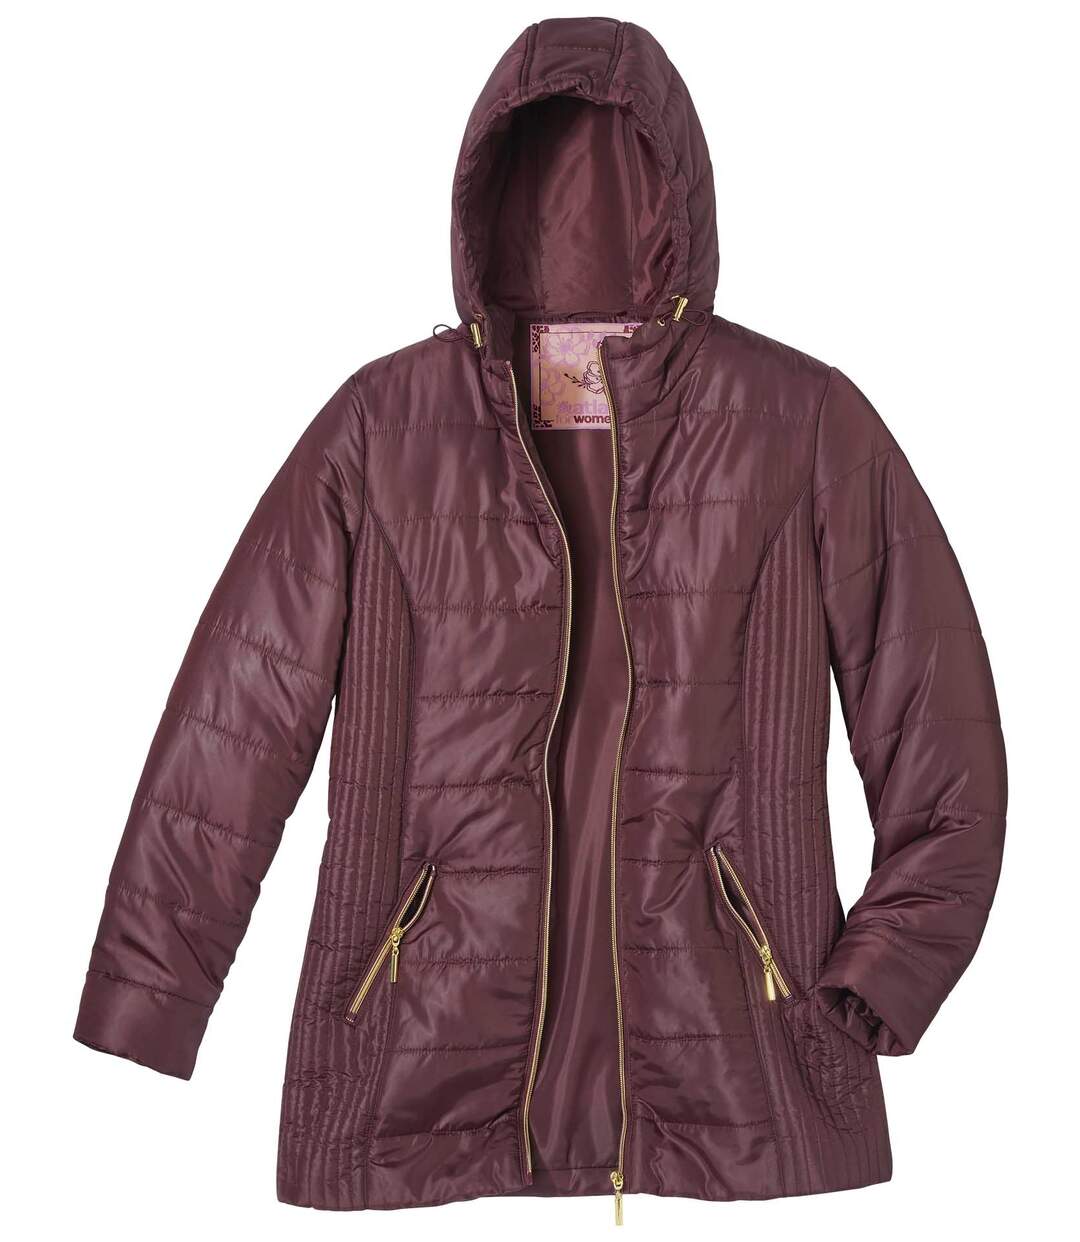 Women's Plum Padded Jacket with Hood - Full Zip - Water-Repellent Atlas For Men